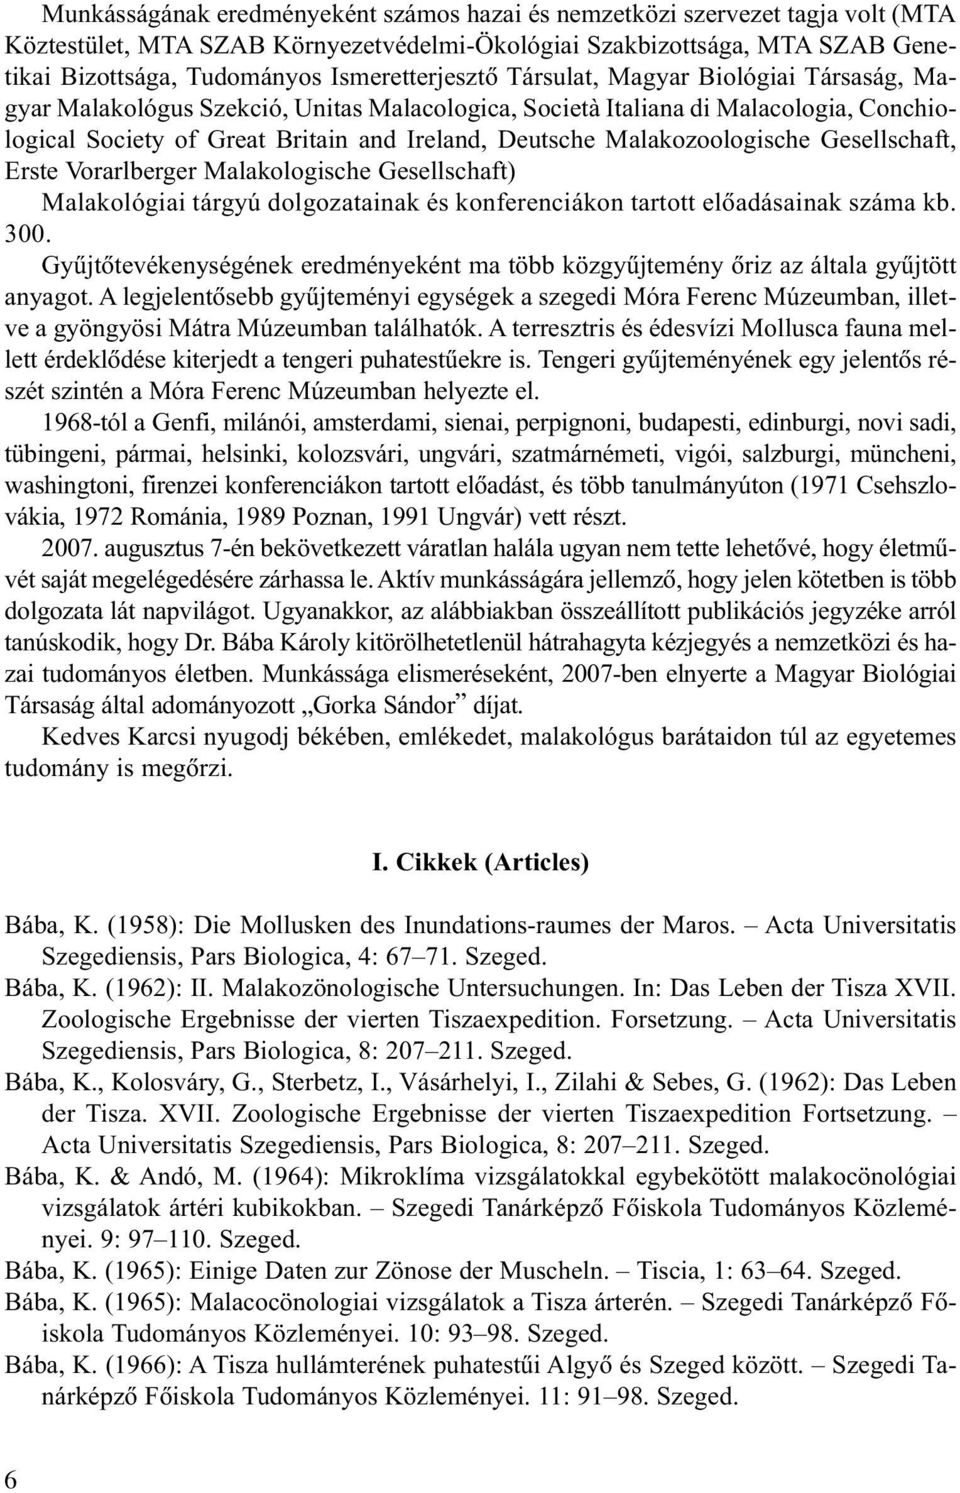 Malakozoologische Gesellschaft, Erste Vorarlberger Malakologische Gesellschaft) Malakológiai tárgyú dolgozatainak és konferenciákon tartott elõadásainak száma kb. 300.